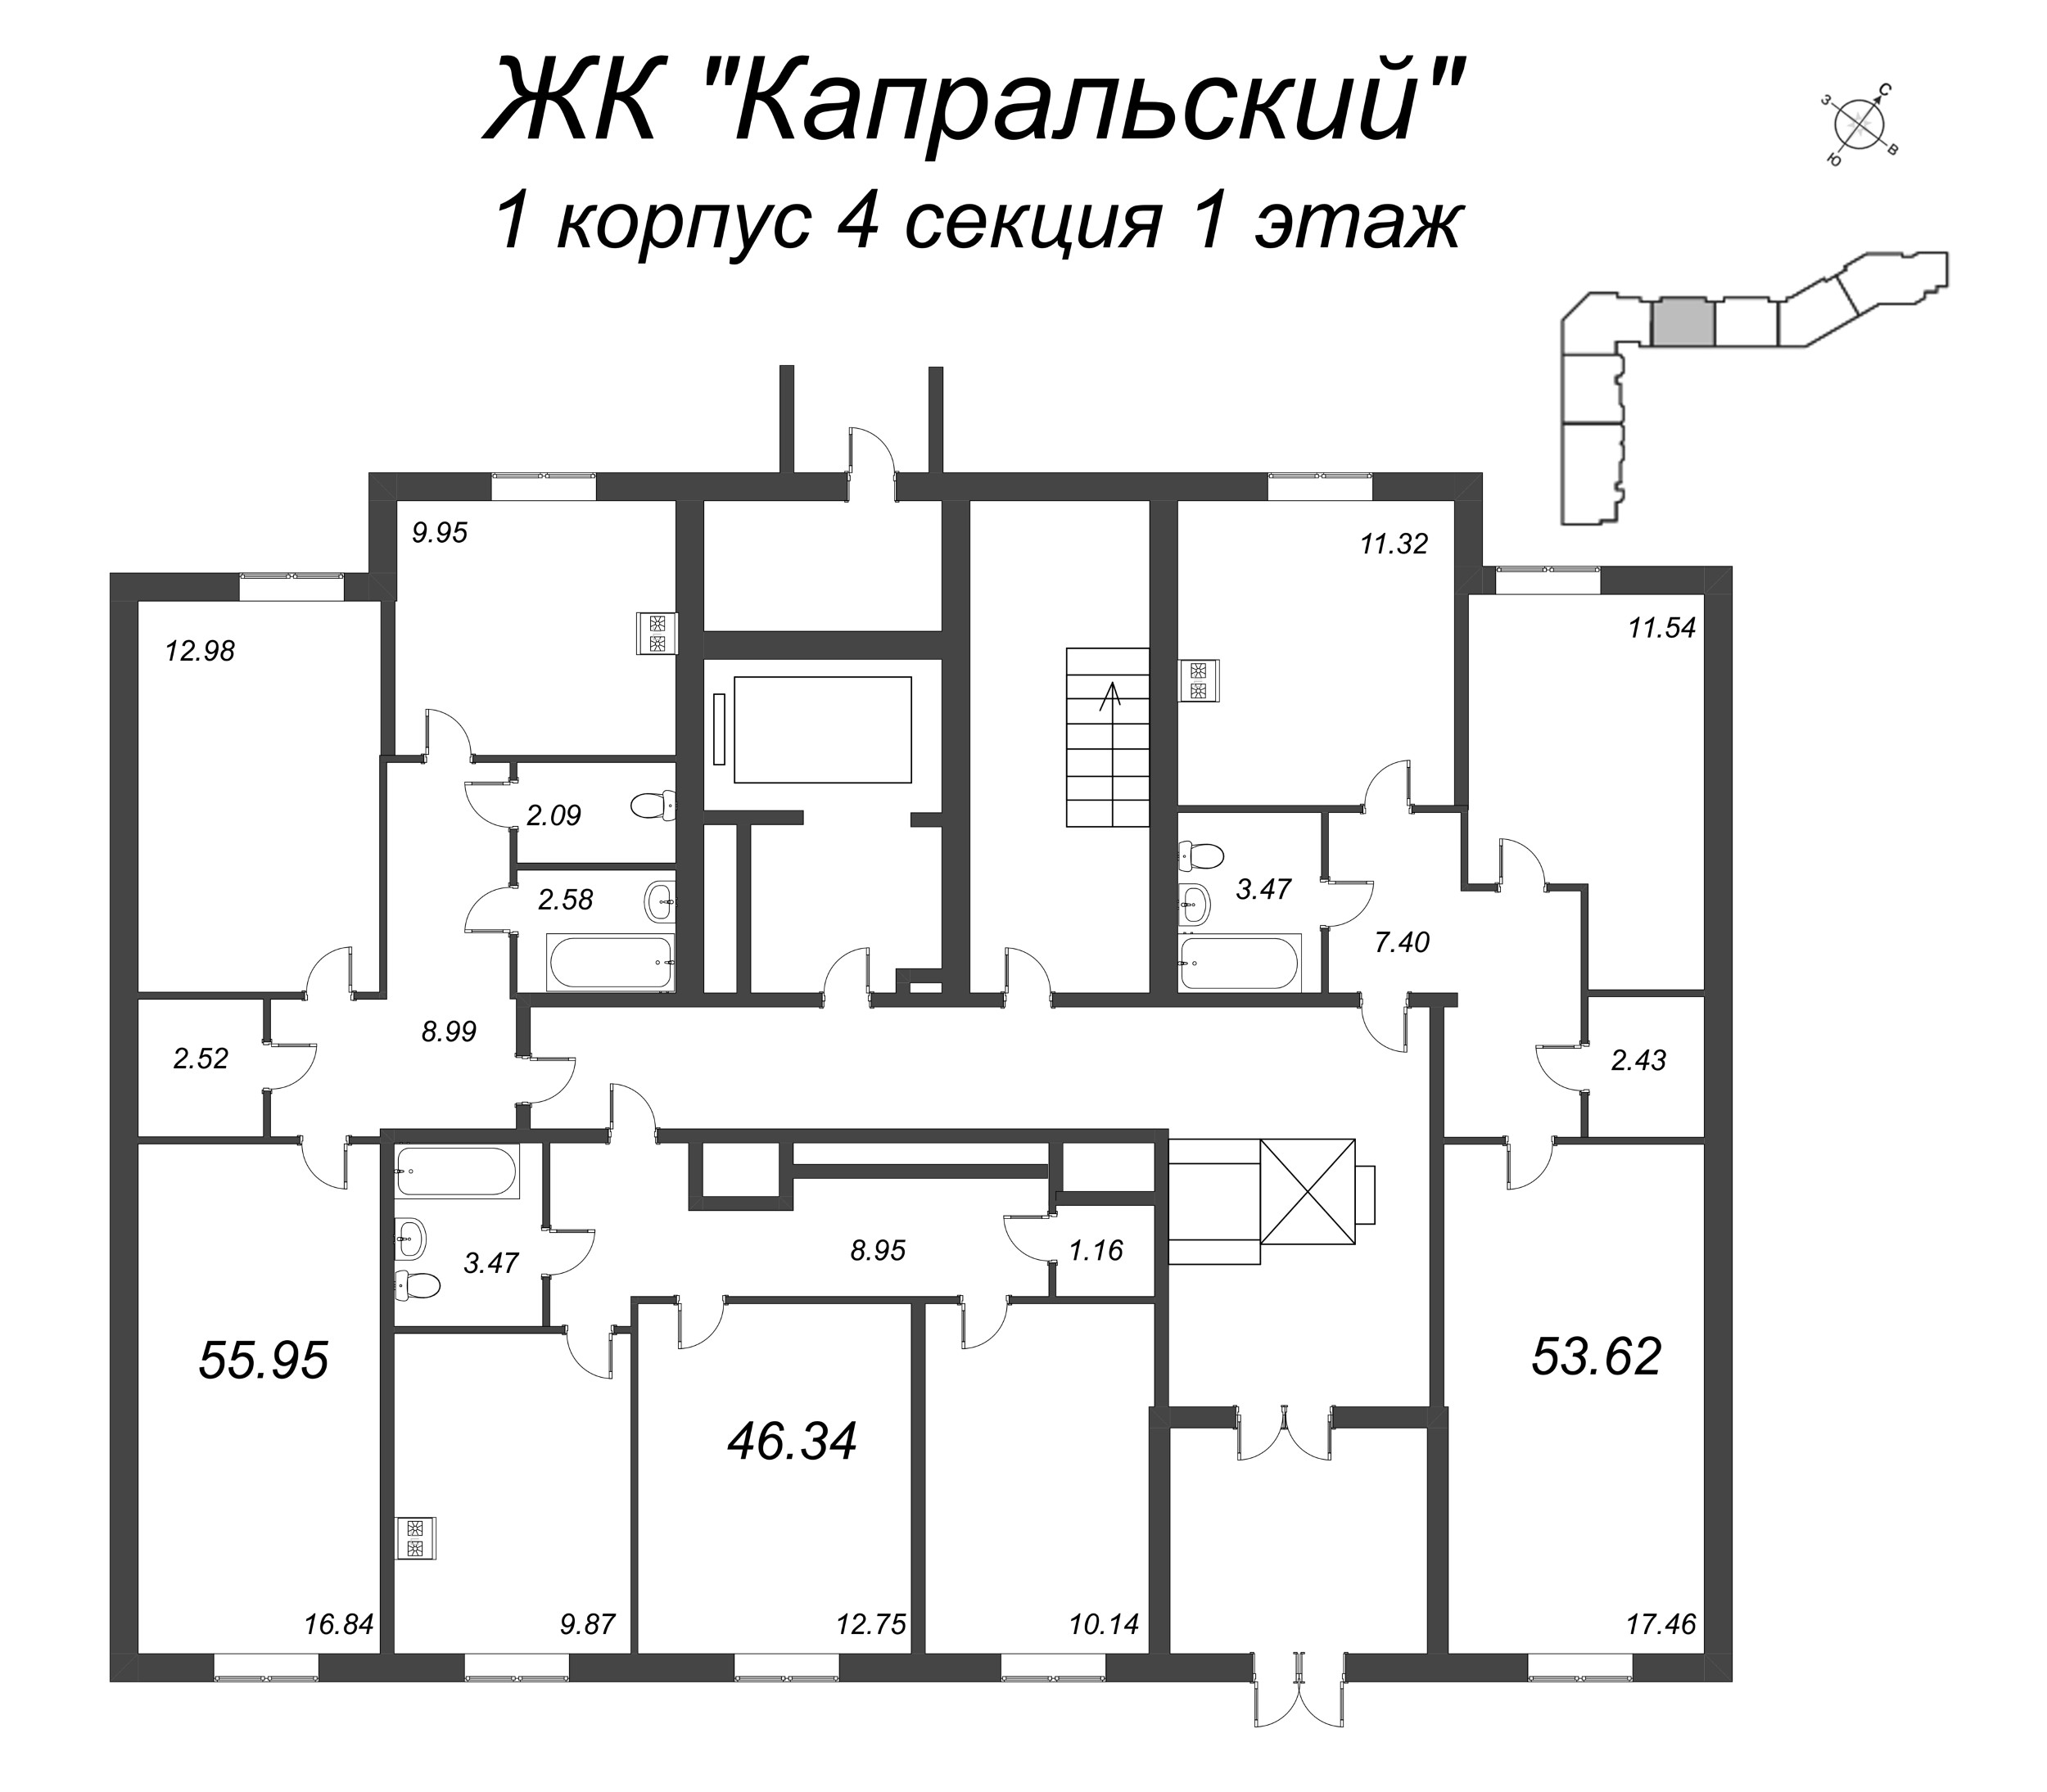 2-комнатная квартира, 46.34 м² в ЖК "Капральский" - планировка этажа